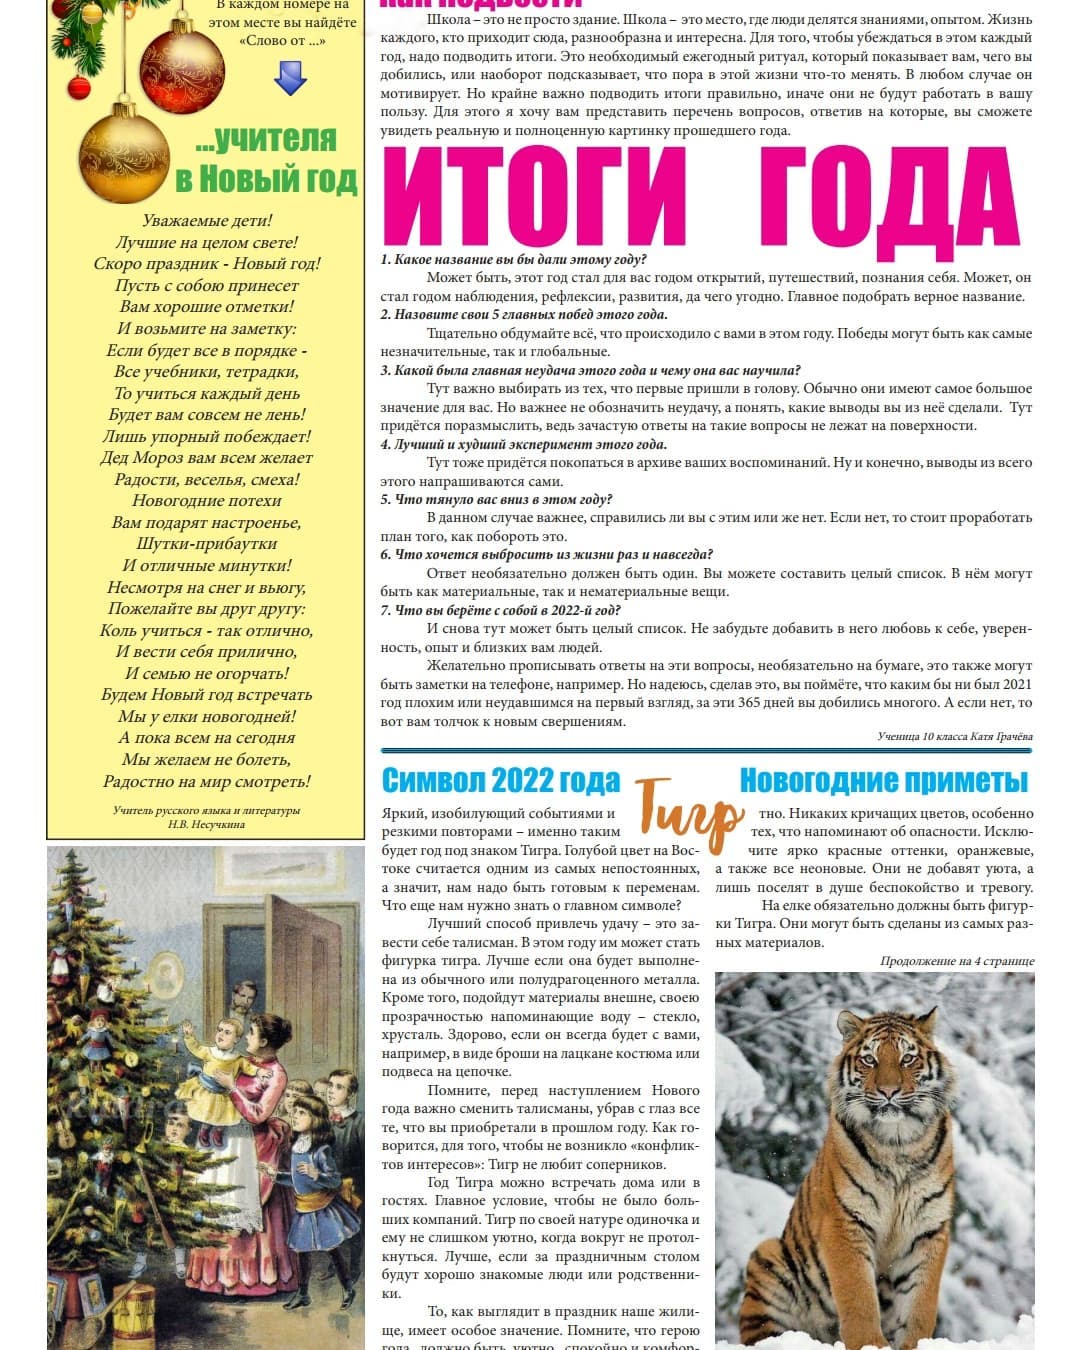 Новогодний выпуск школьной газеты "Новость 61"